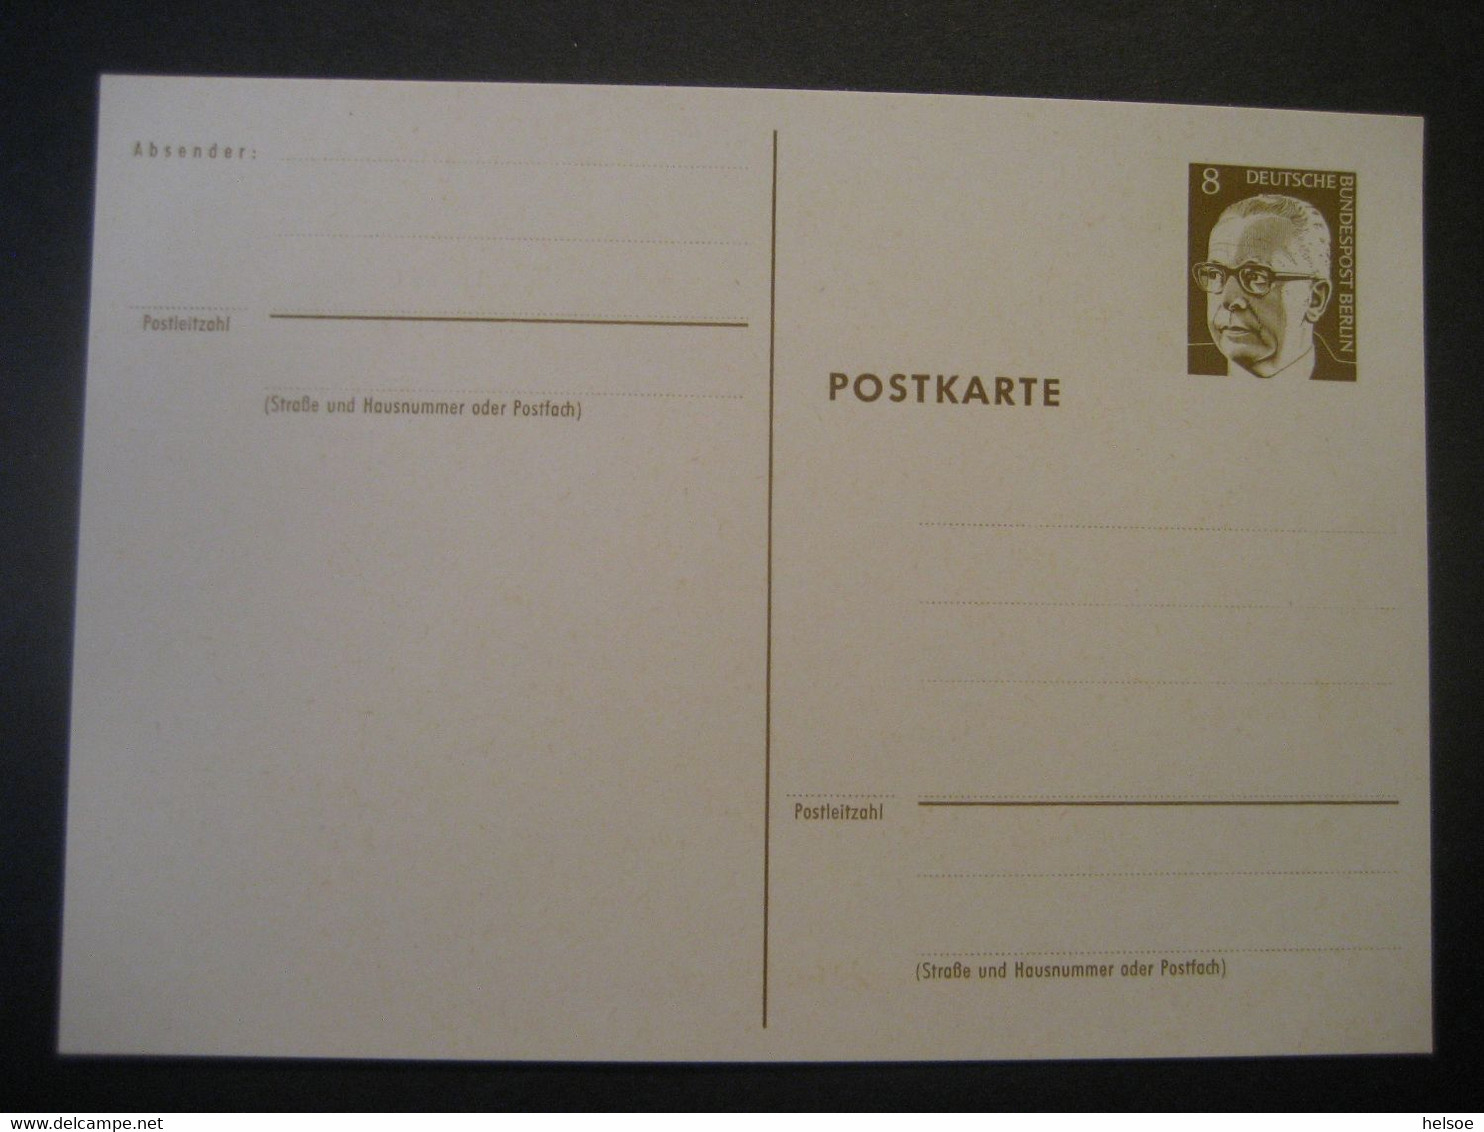 Deutschland Berlin 1972- Ganzsache Postkarte Gustav Heinemann Ungebraucht MiNr. P 80 - Postkarten - Ungebraucht